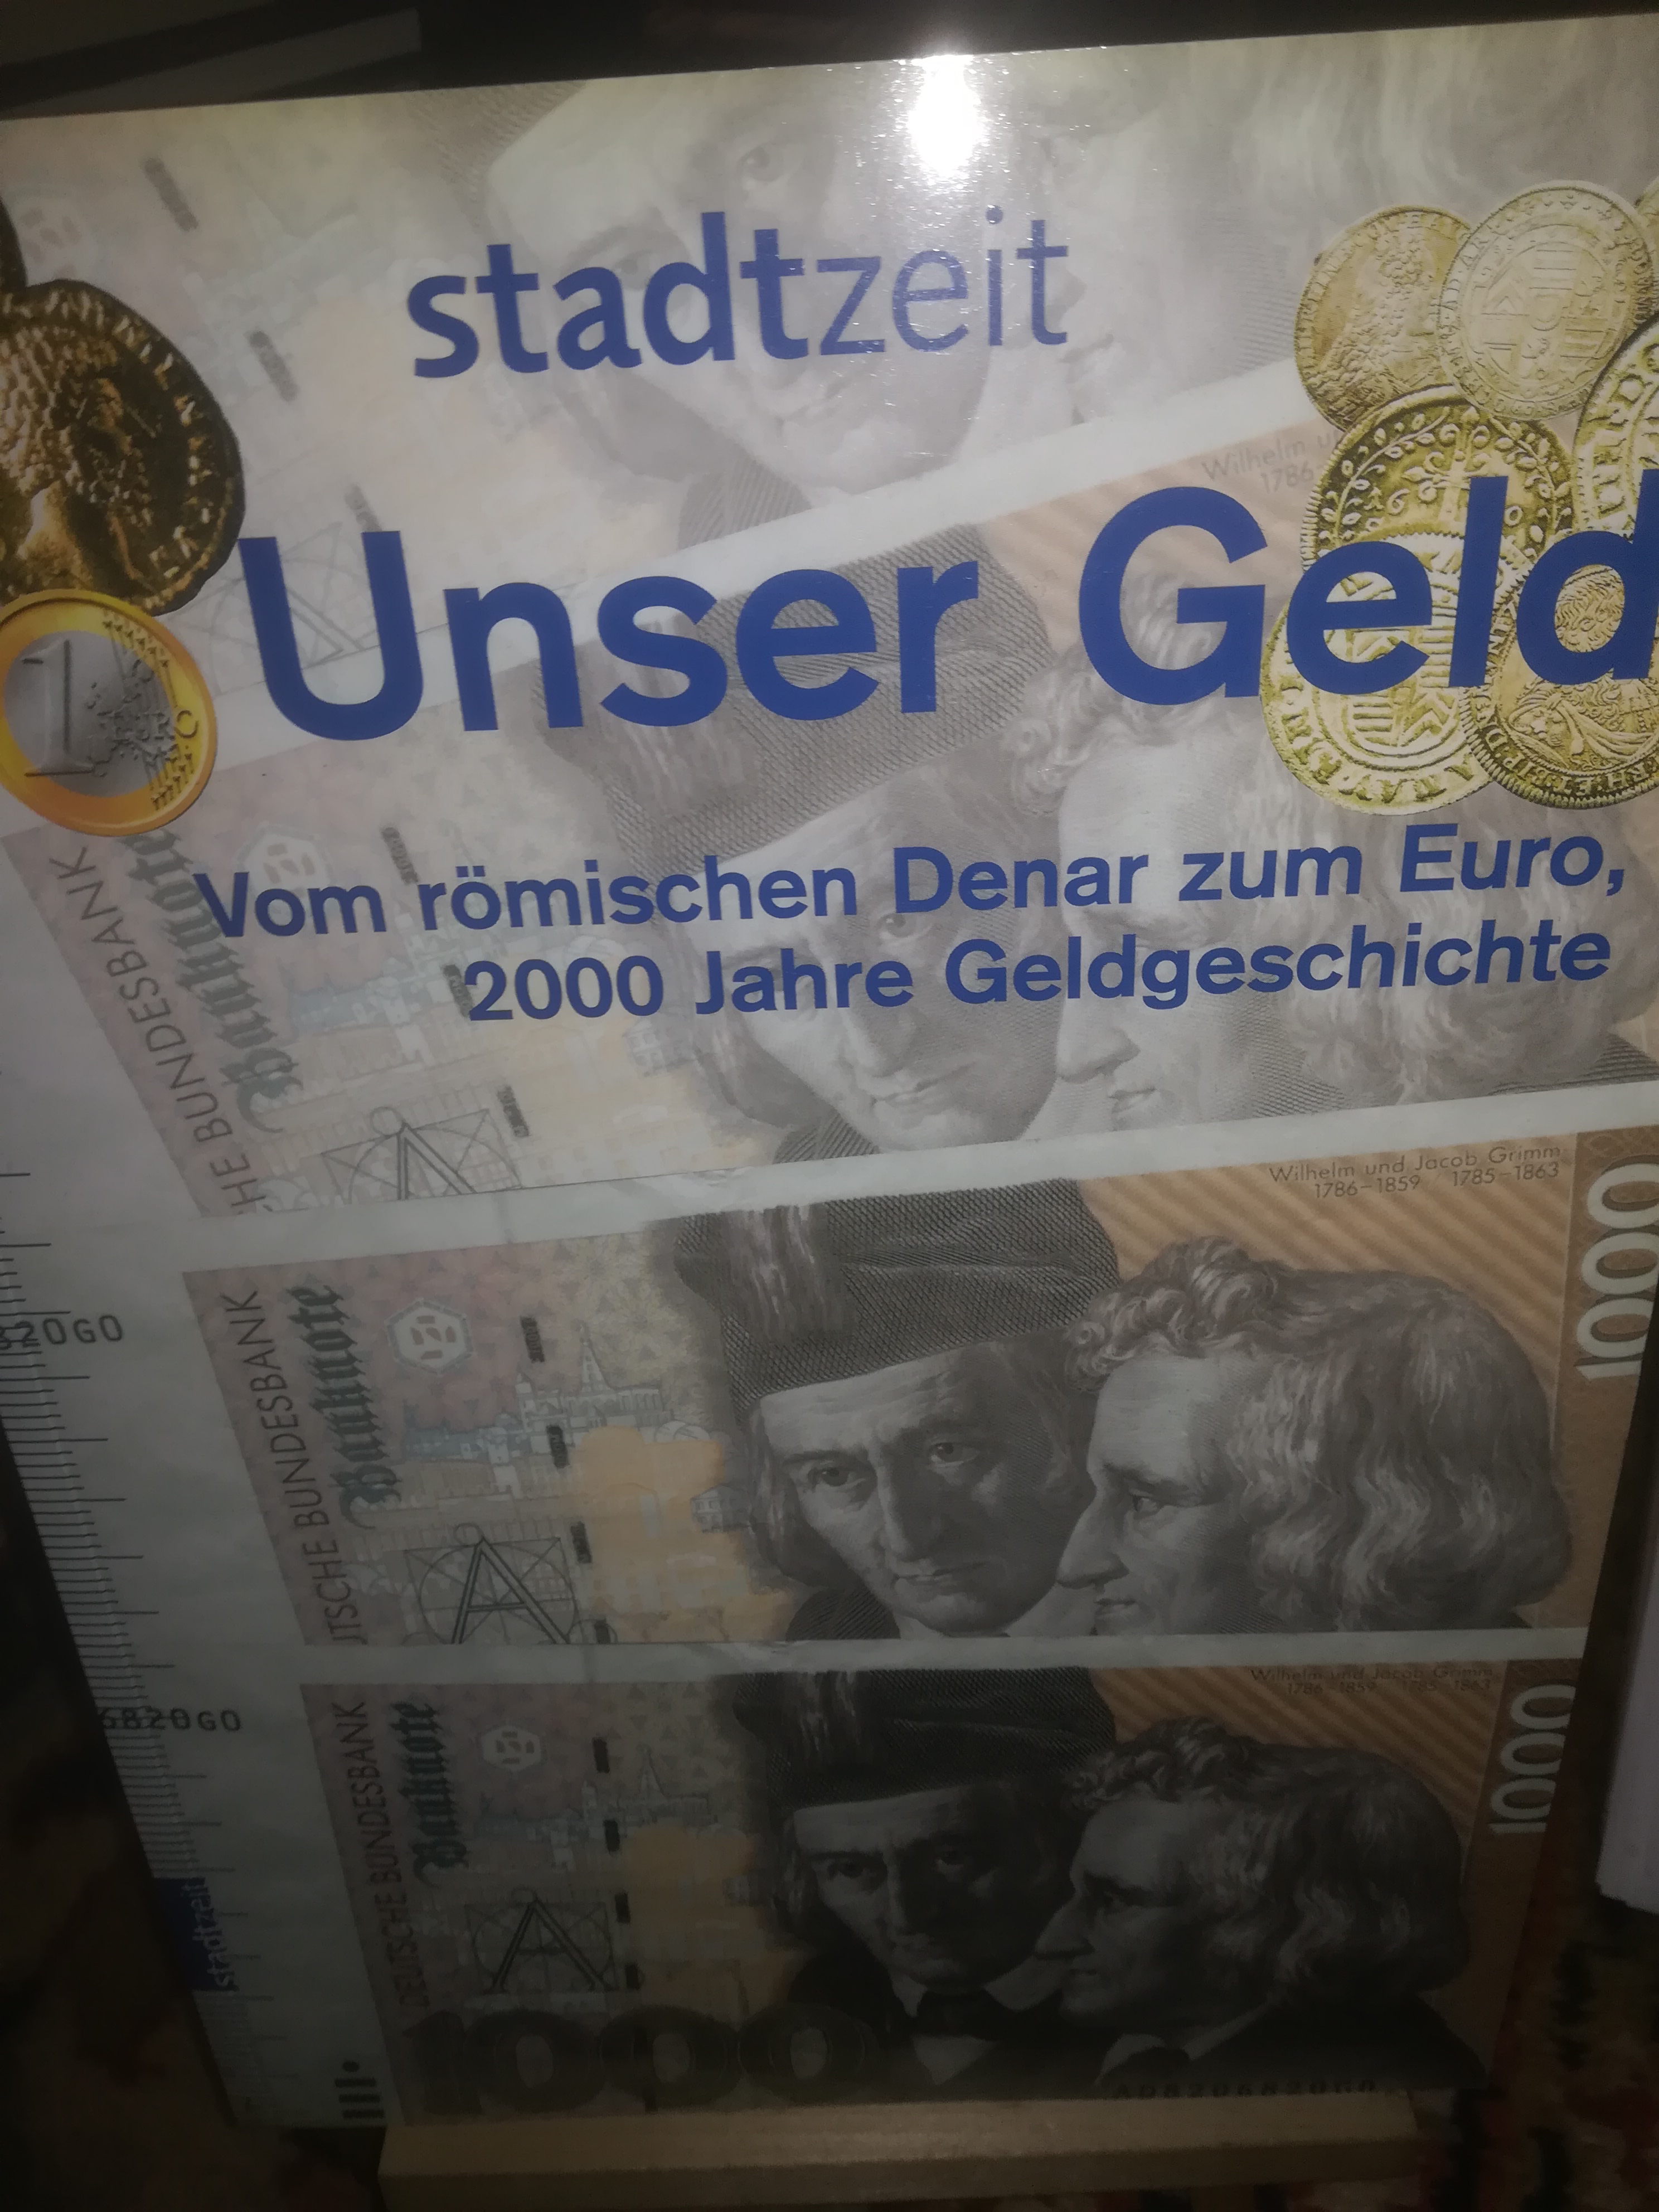 Stadtzeit 4, Unser Geld, Vom römischen Denar zum Euro, 2000 Jahre Geldgeschichte - Hanauer Anzeiger (HRSG)